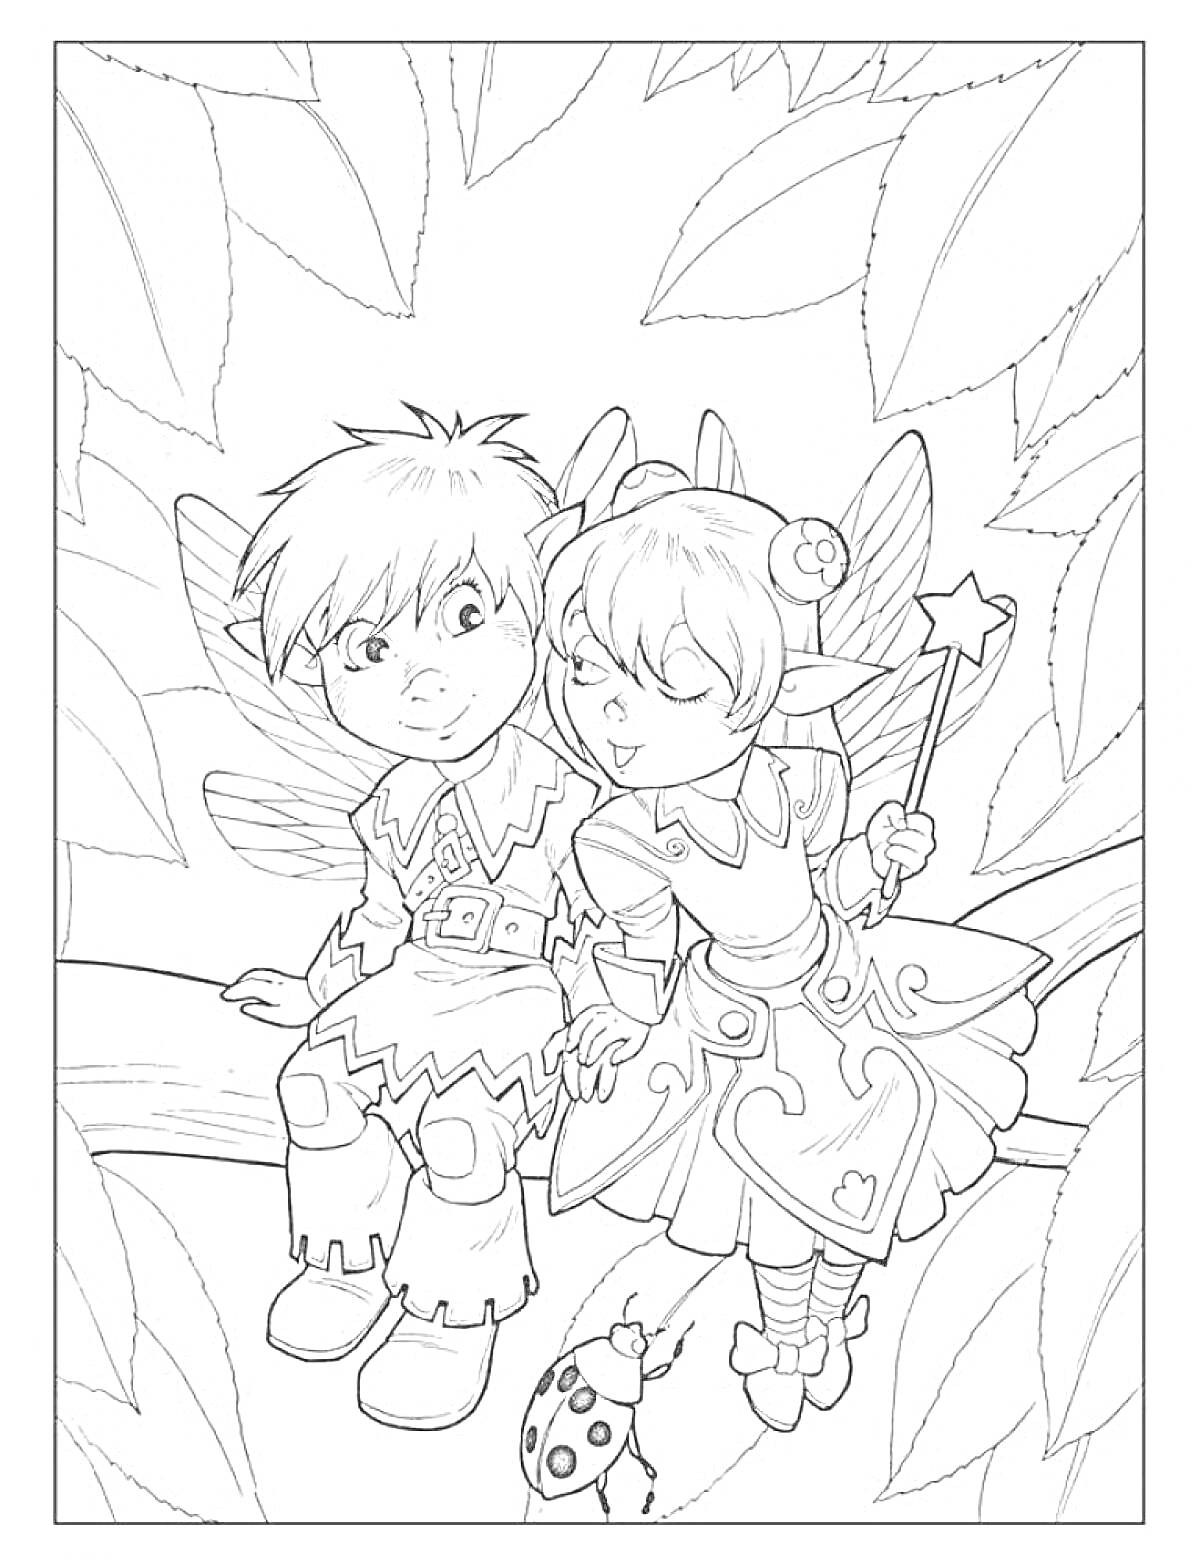 Раскраска Два феи в лесу, мальчик и девочка с крыльями, сидящие на дереве, рядом с божьей коровкой